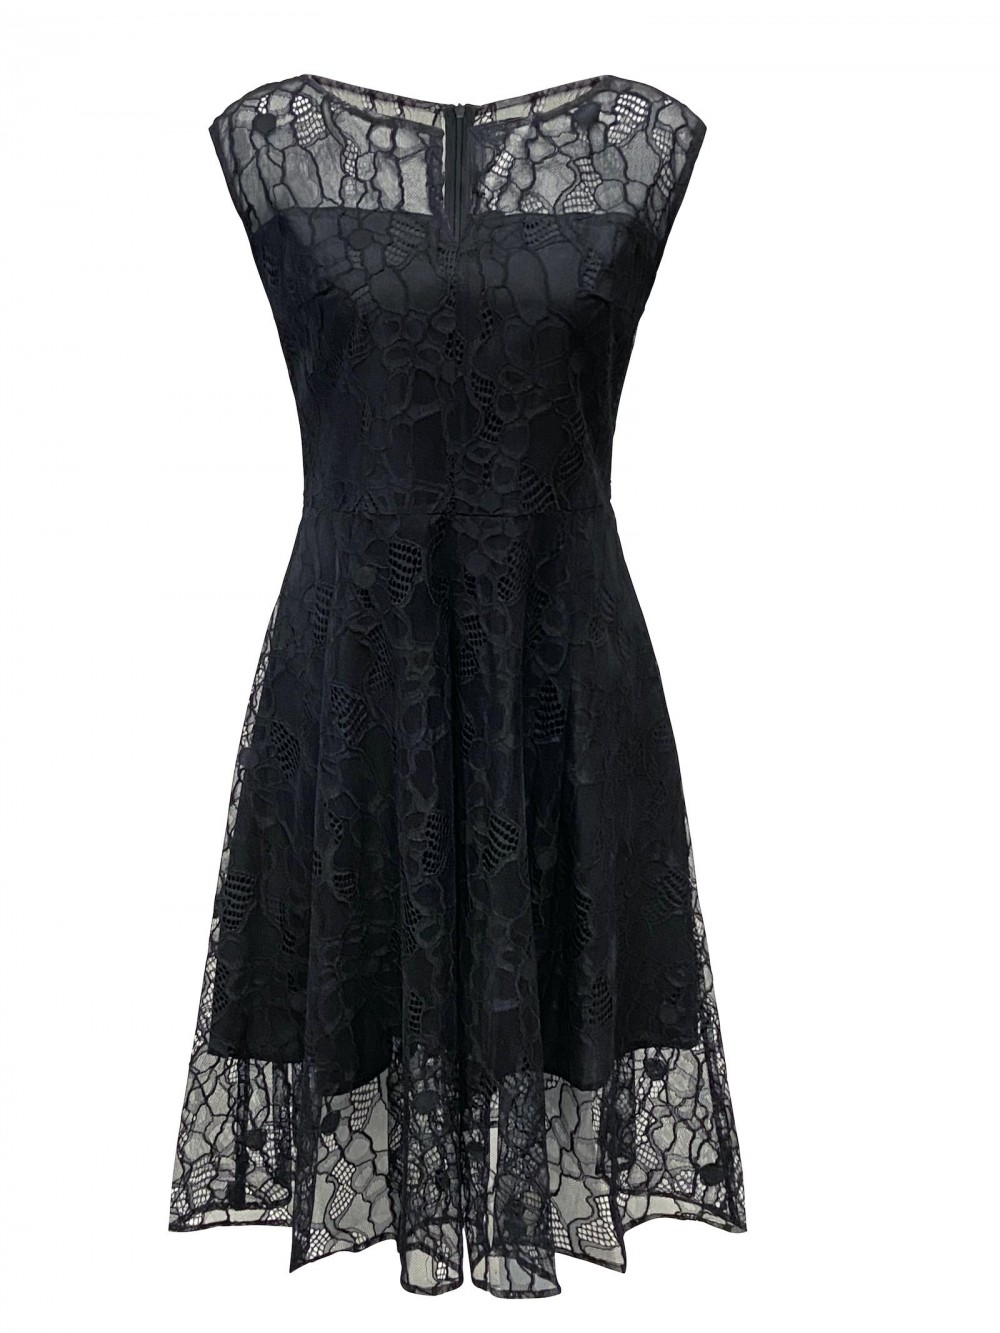 Lace dress MIRA black